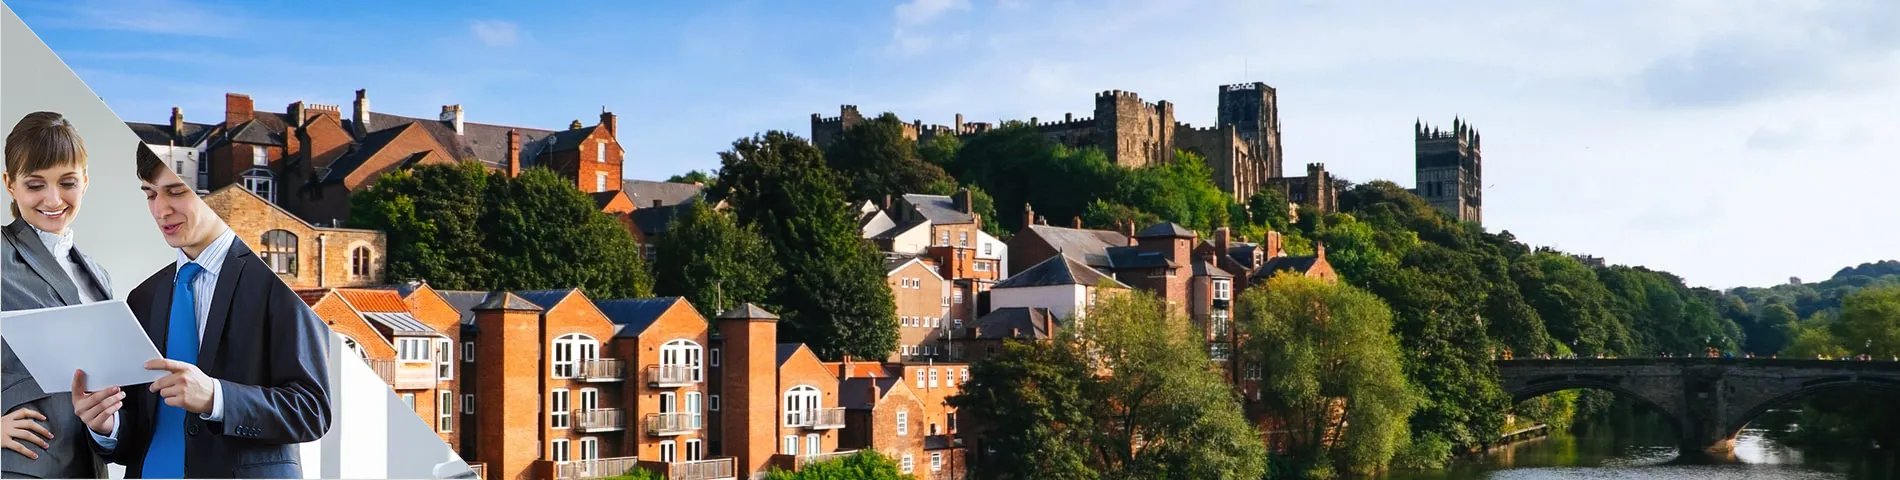 Durham - 